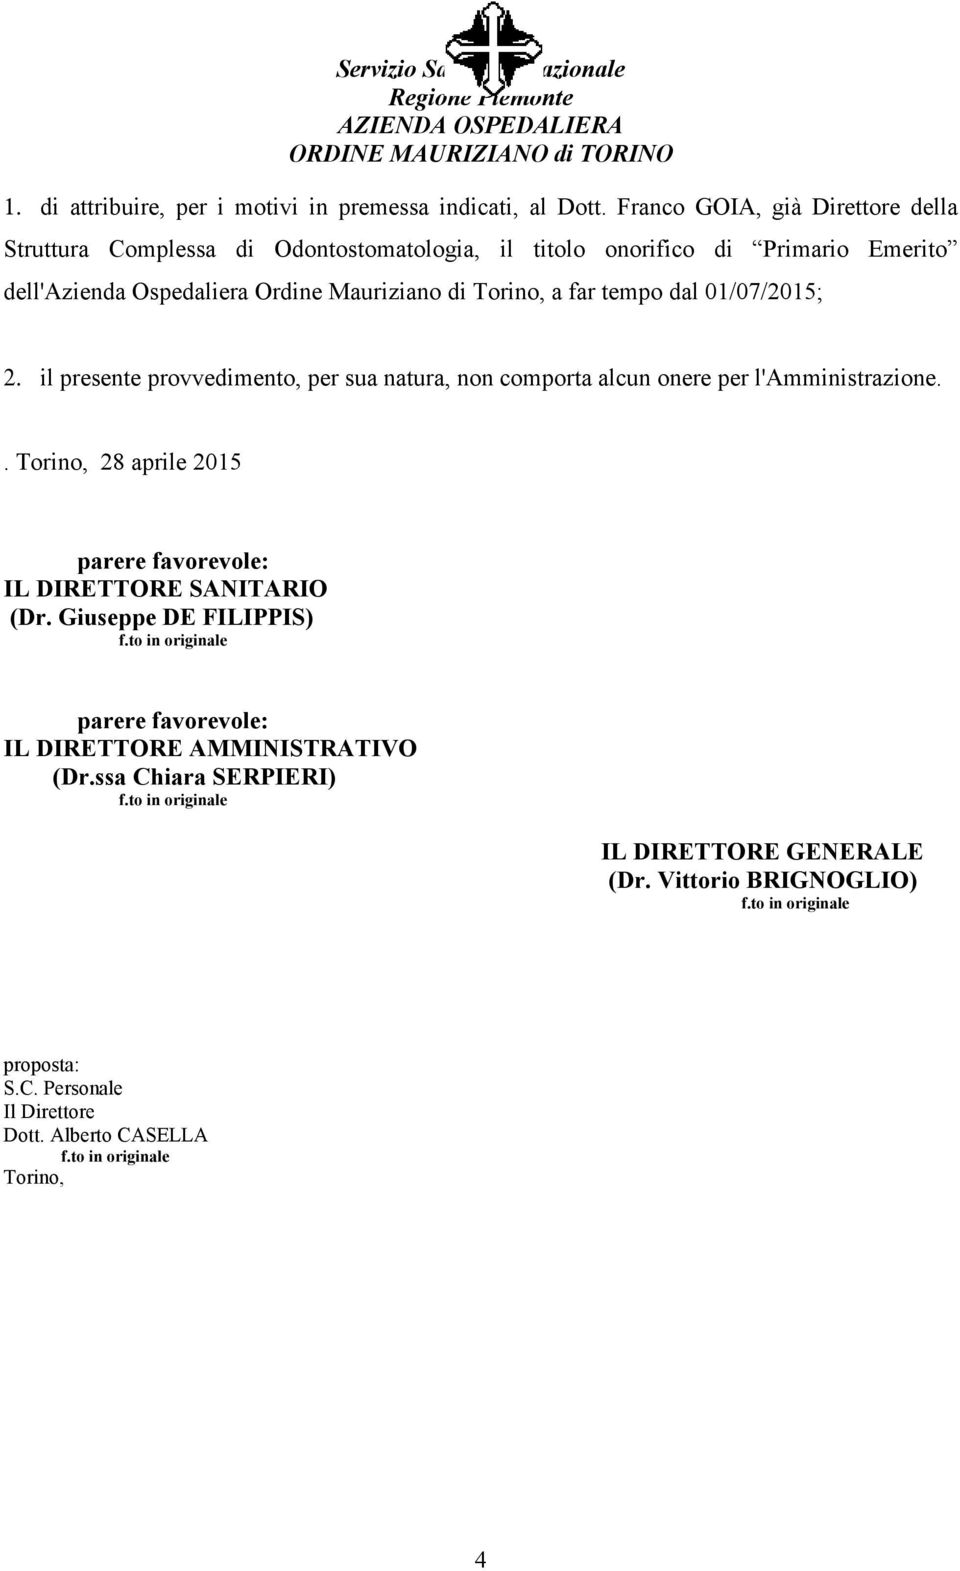 di Torino, a far tempo dal 01/07/2015; 2. il presente provvedimento, per sua natura, non comporta alcun onere per l'amministrazione.